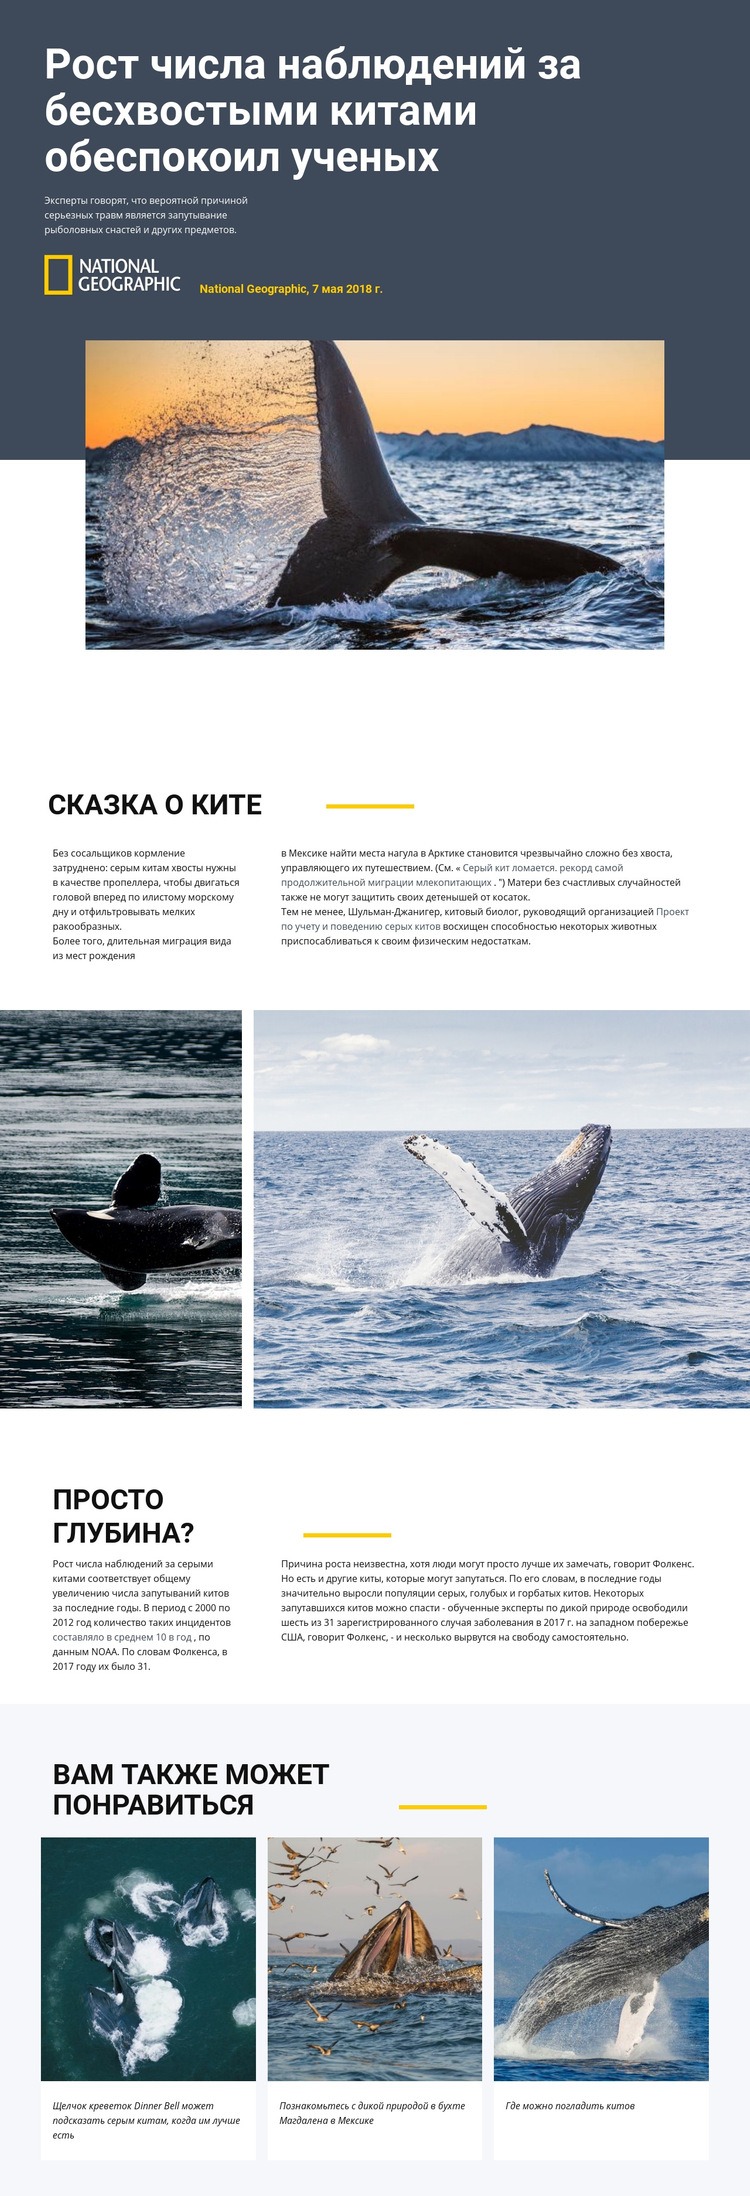 Центр наблюдения за китами HTML шаблон